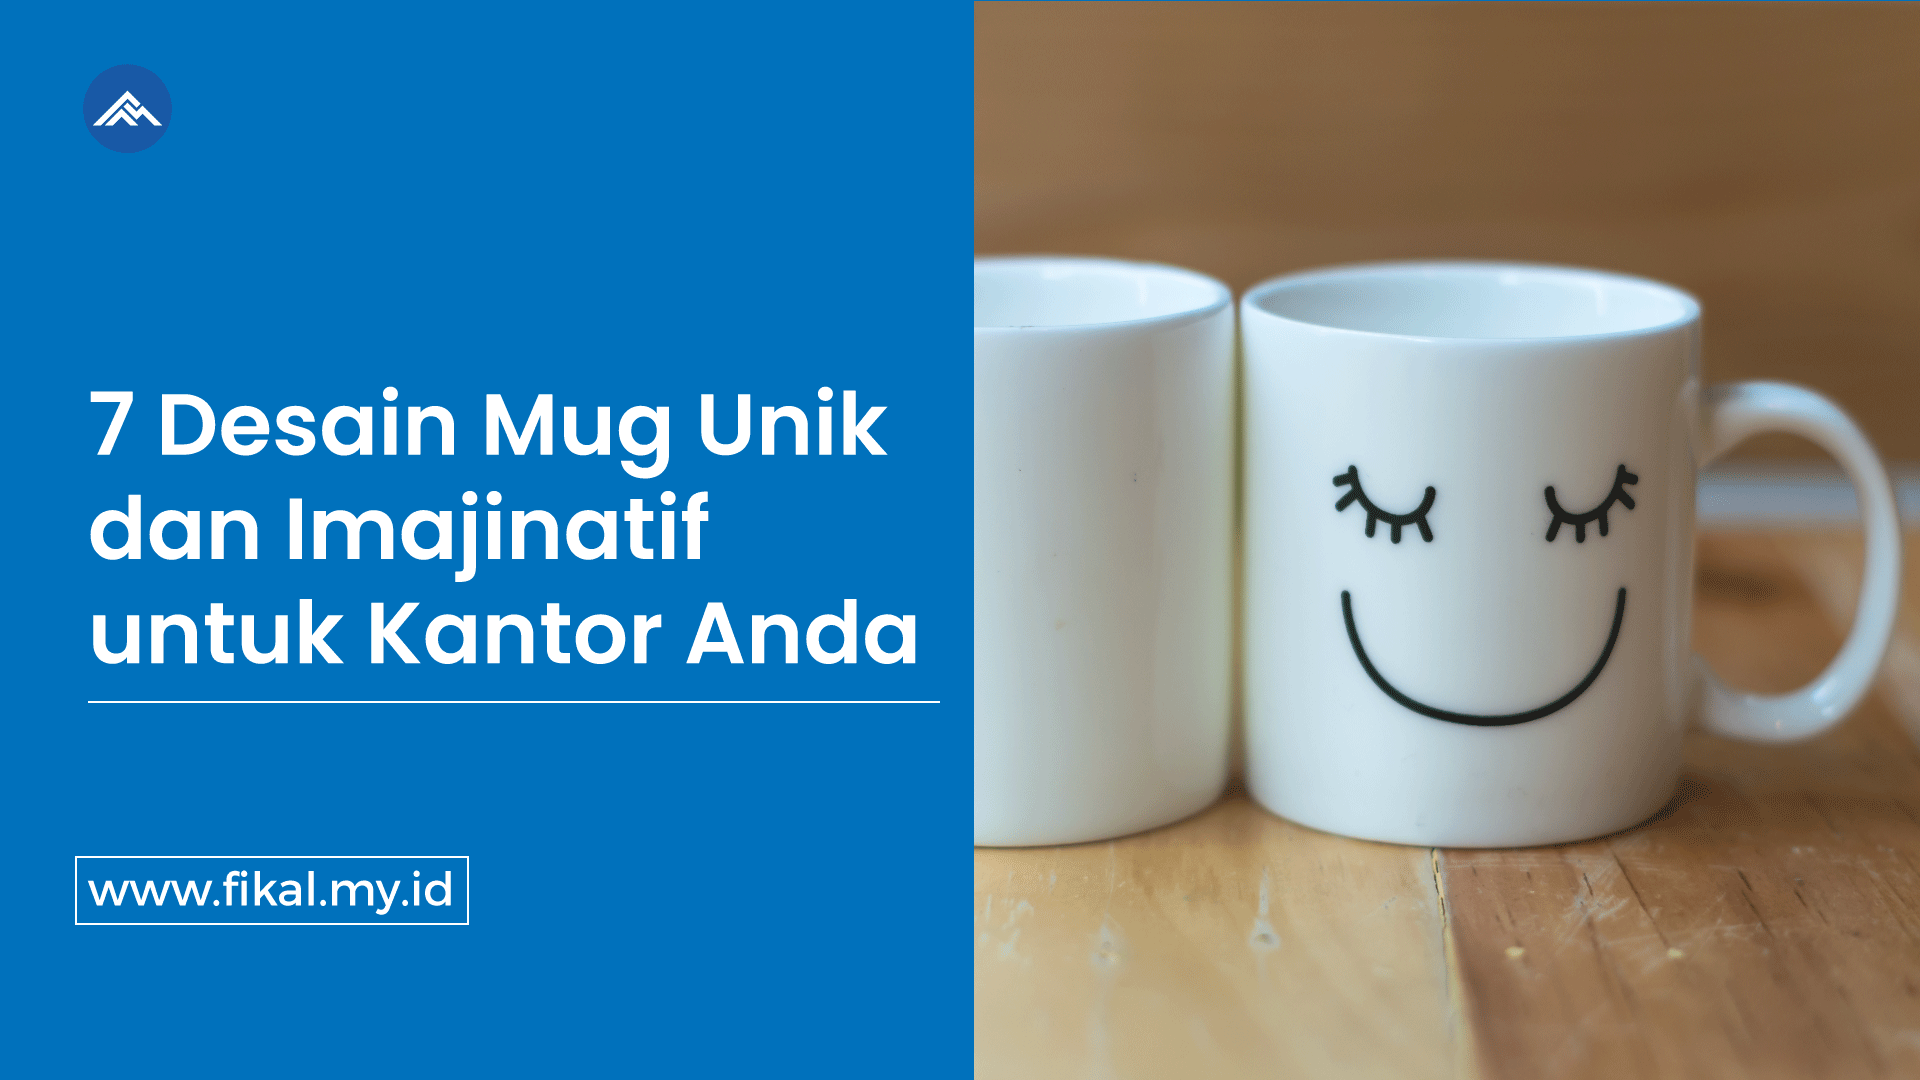 7 Desain Mug Unik dan Imajinatif untuk Kantor Anda